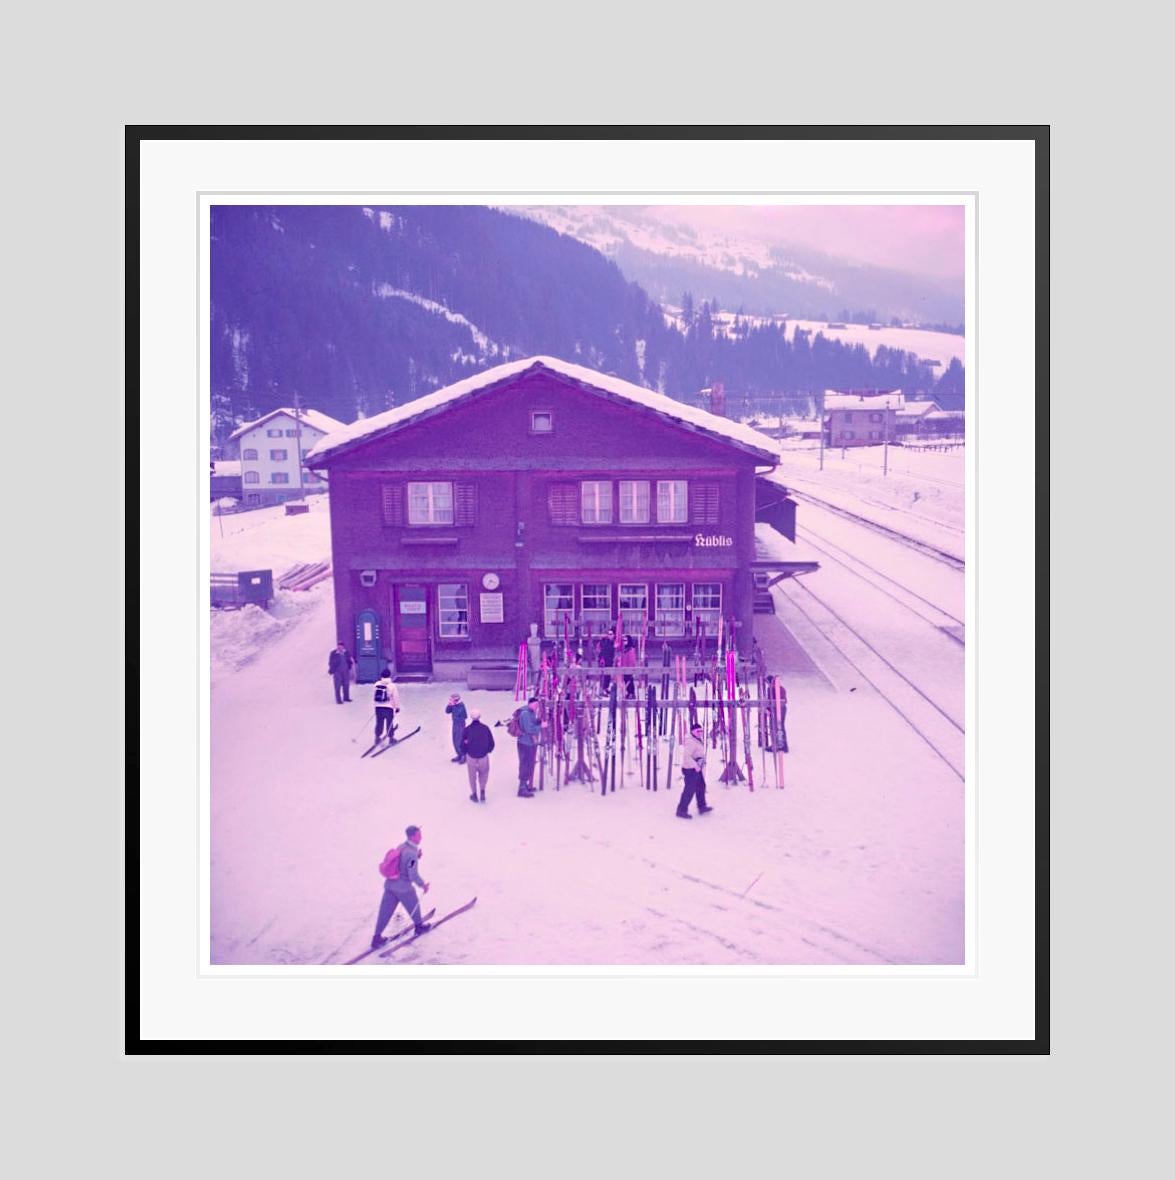 Bahnhof der Alpenbahn 
1951

Aufgestapelte Skier vor einer Alpenbahnstation, Klosters, Schweiz, 1951.

von Toni Frissell

20 x 20